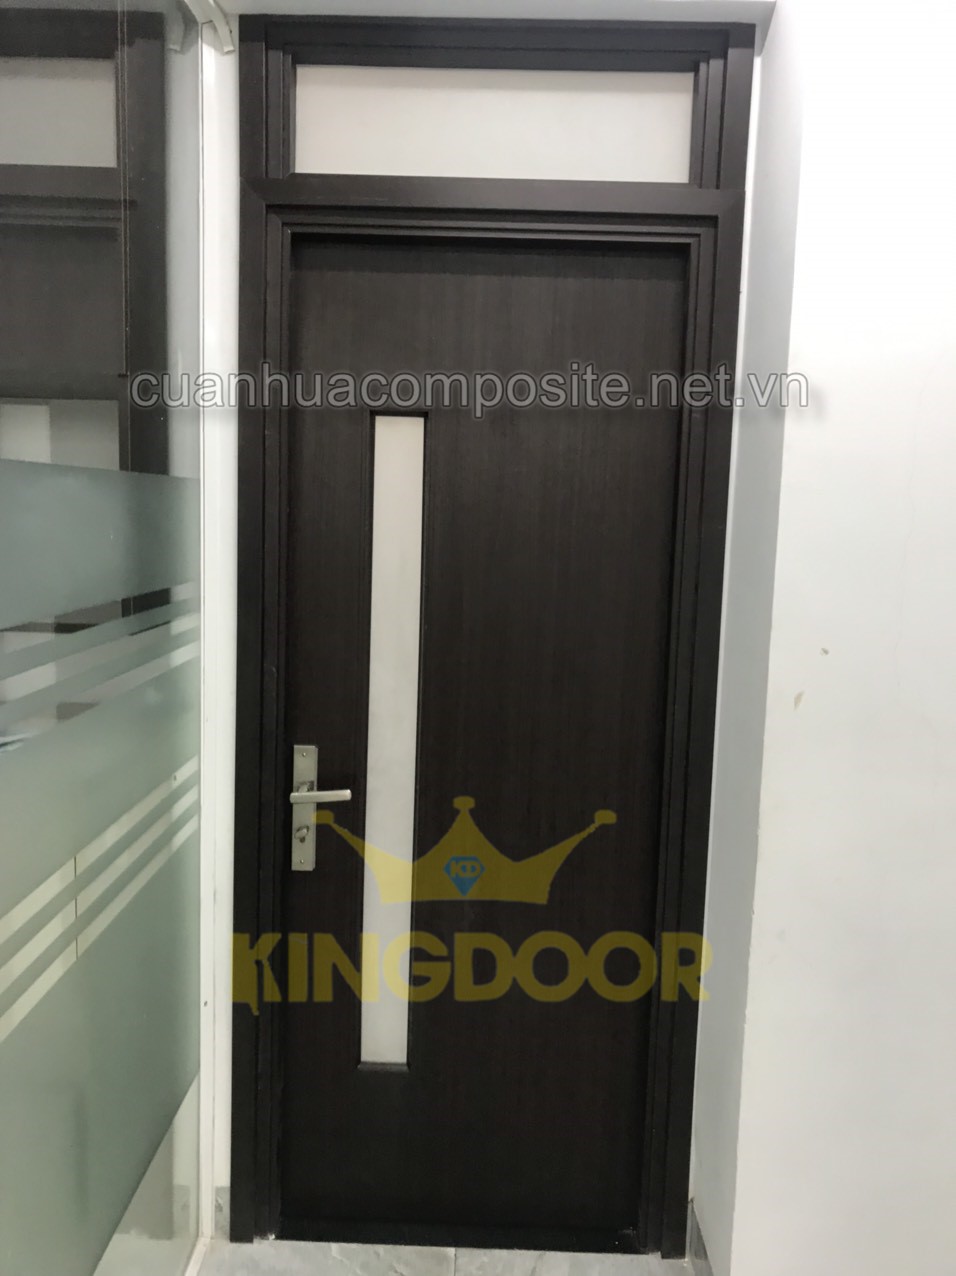 Mẫu cửa nhựa composite - giá cửa nhựa composite có ô kính